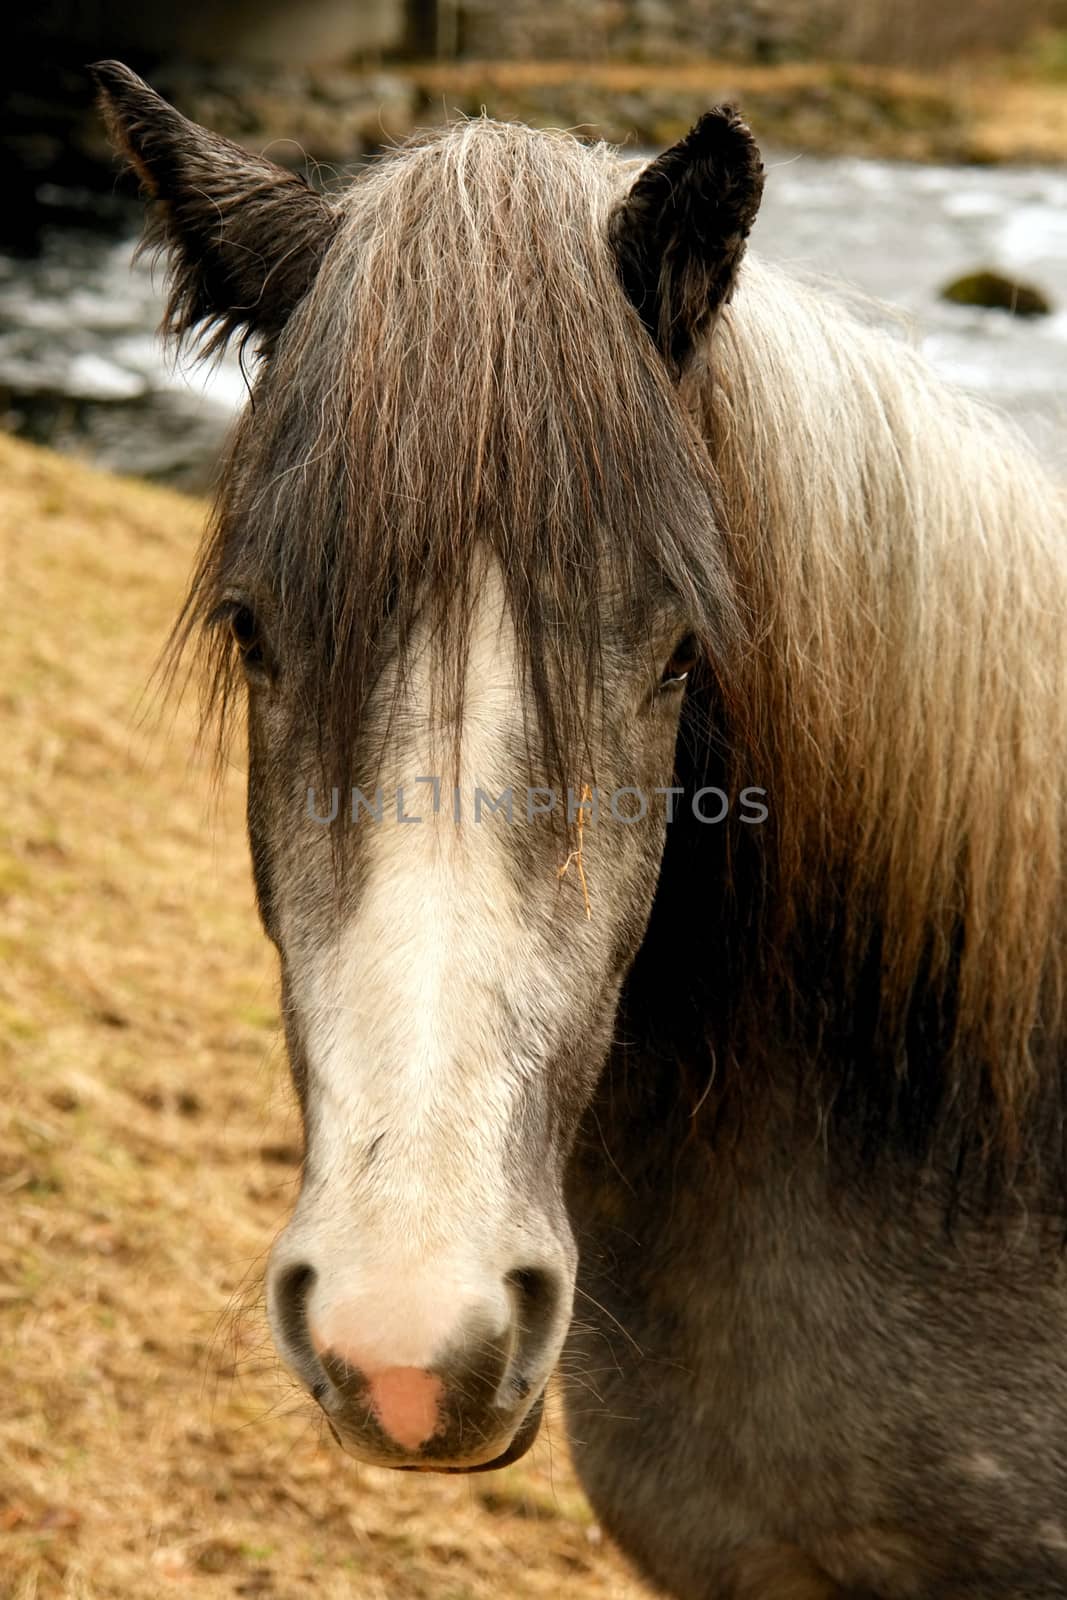 Nordic horse picturesque portrait in wild scenario